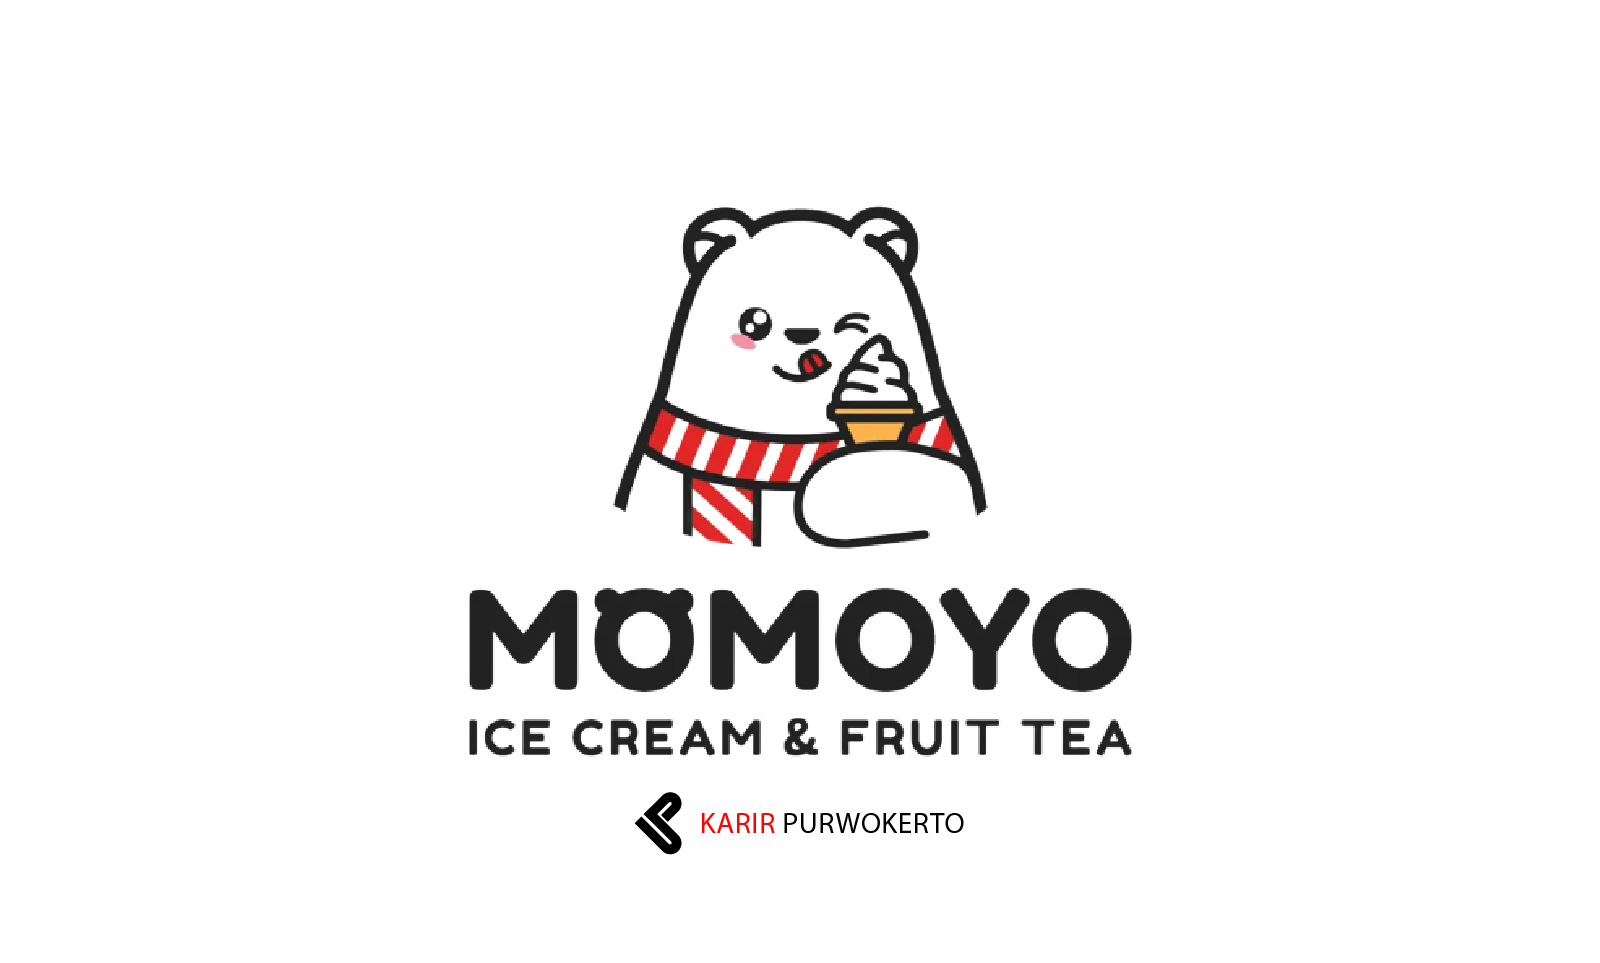 Lowongan Kerja Momoyo Ice Cream & Fruit Tea